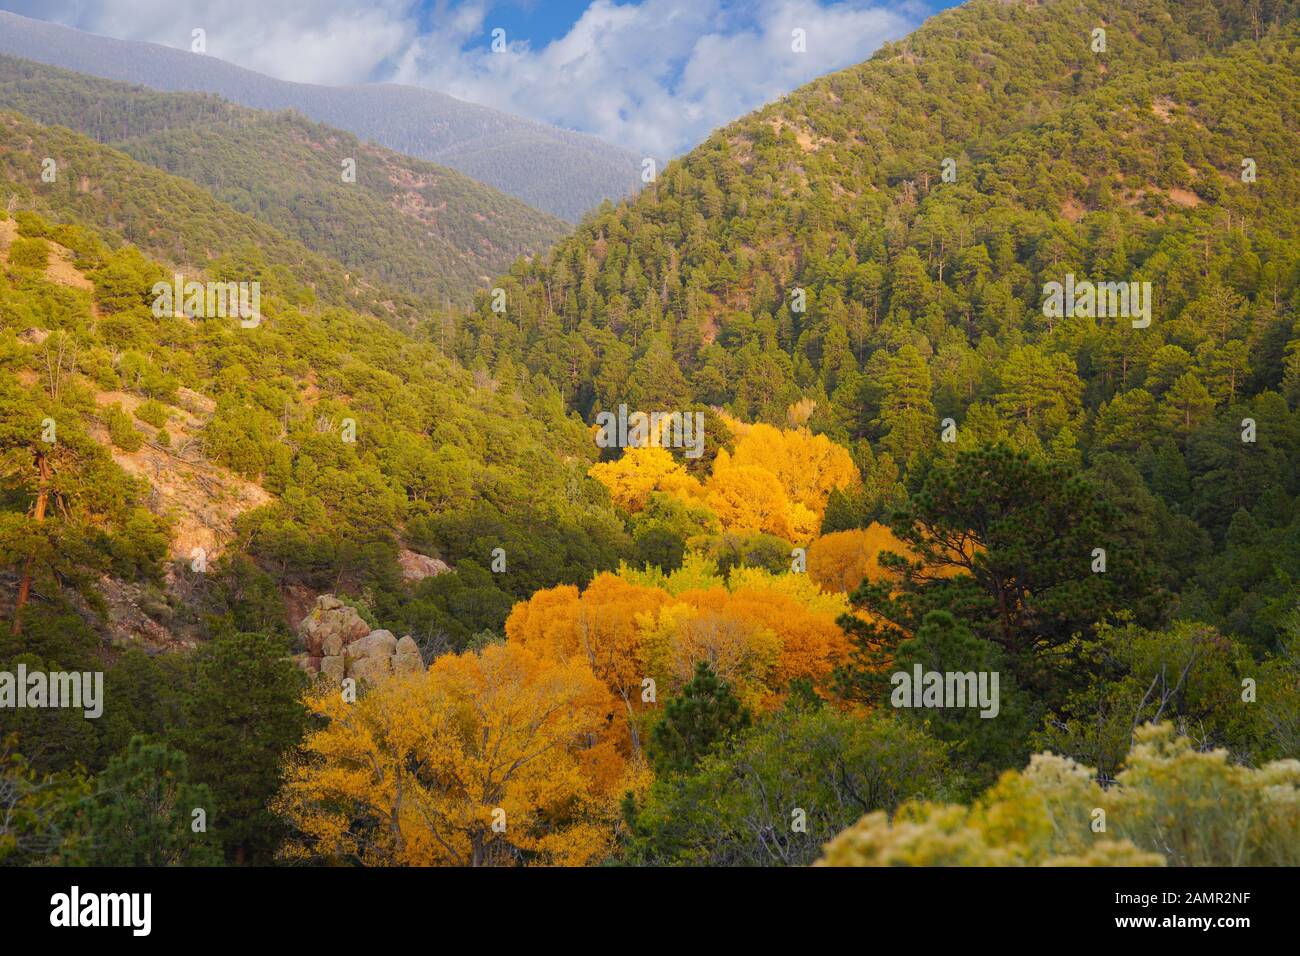 Die Farben des Herbstes zeigen anschaulich in die grünen Wälder der Berge außerhalb von Santa Fe Stockfoto